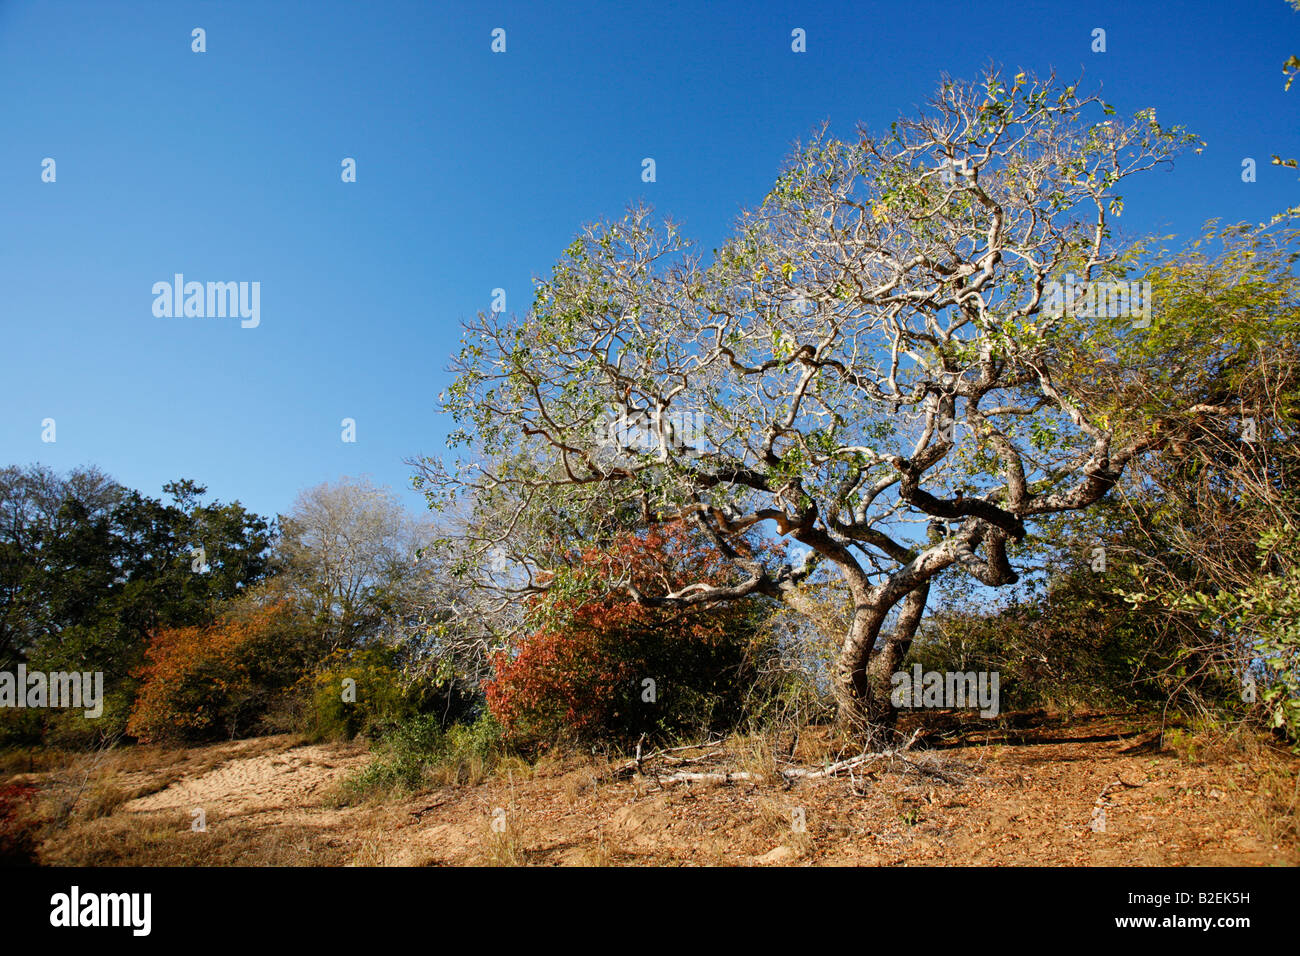 Where do mahogany trees grow?